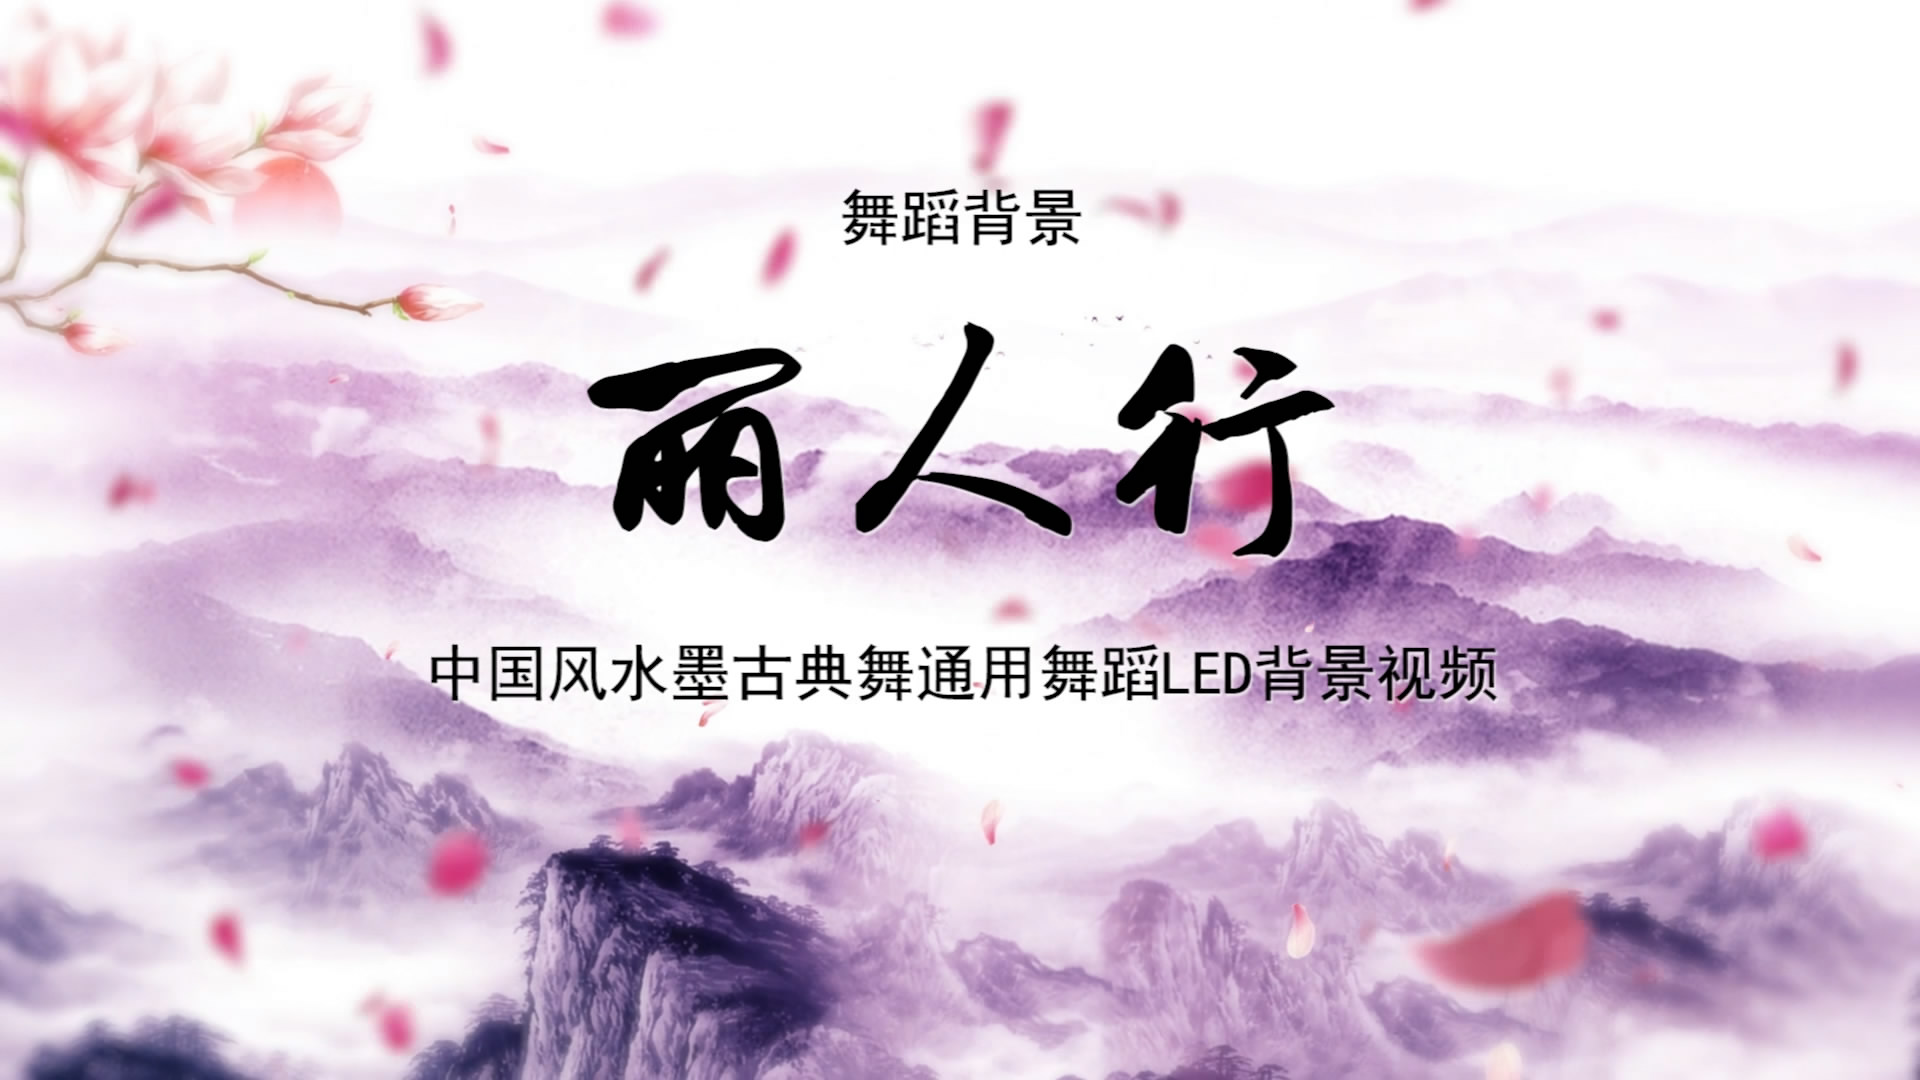 丽人行 古典中国风水墨歌舞晚会舞蹈节目LED背景